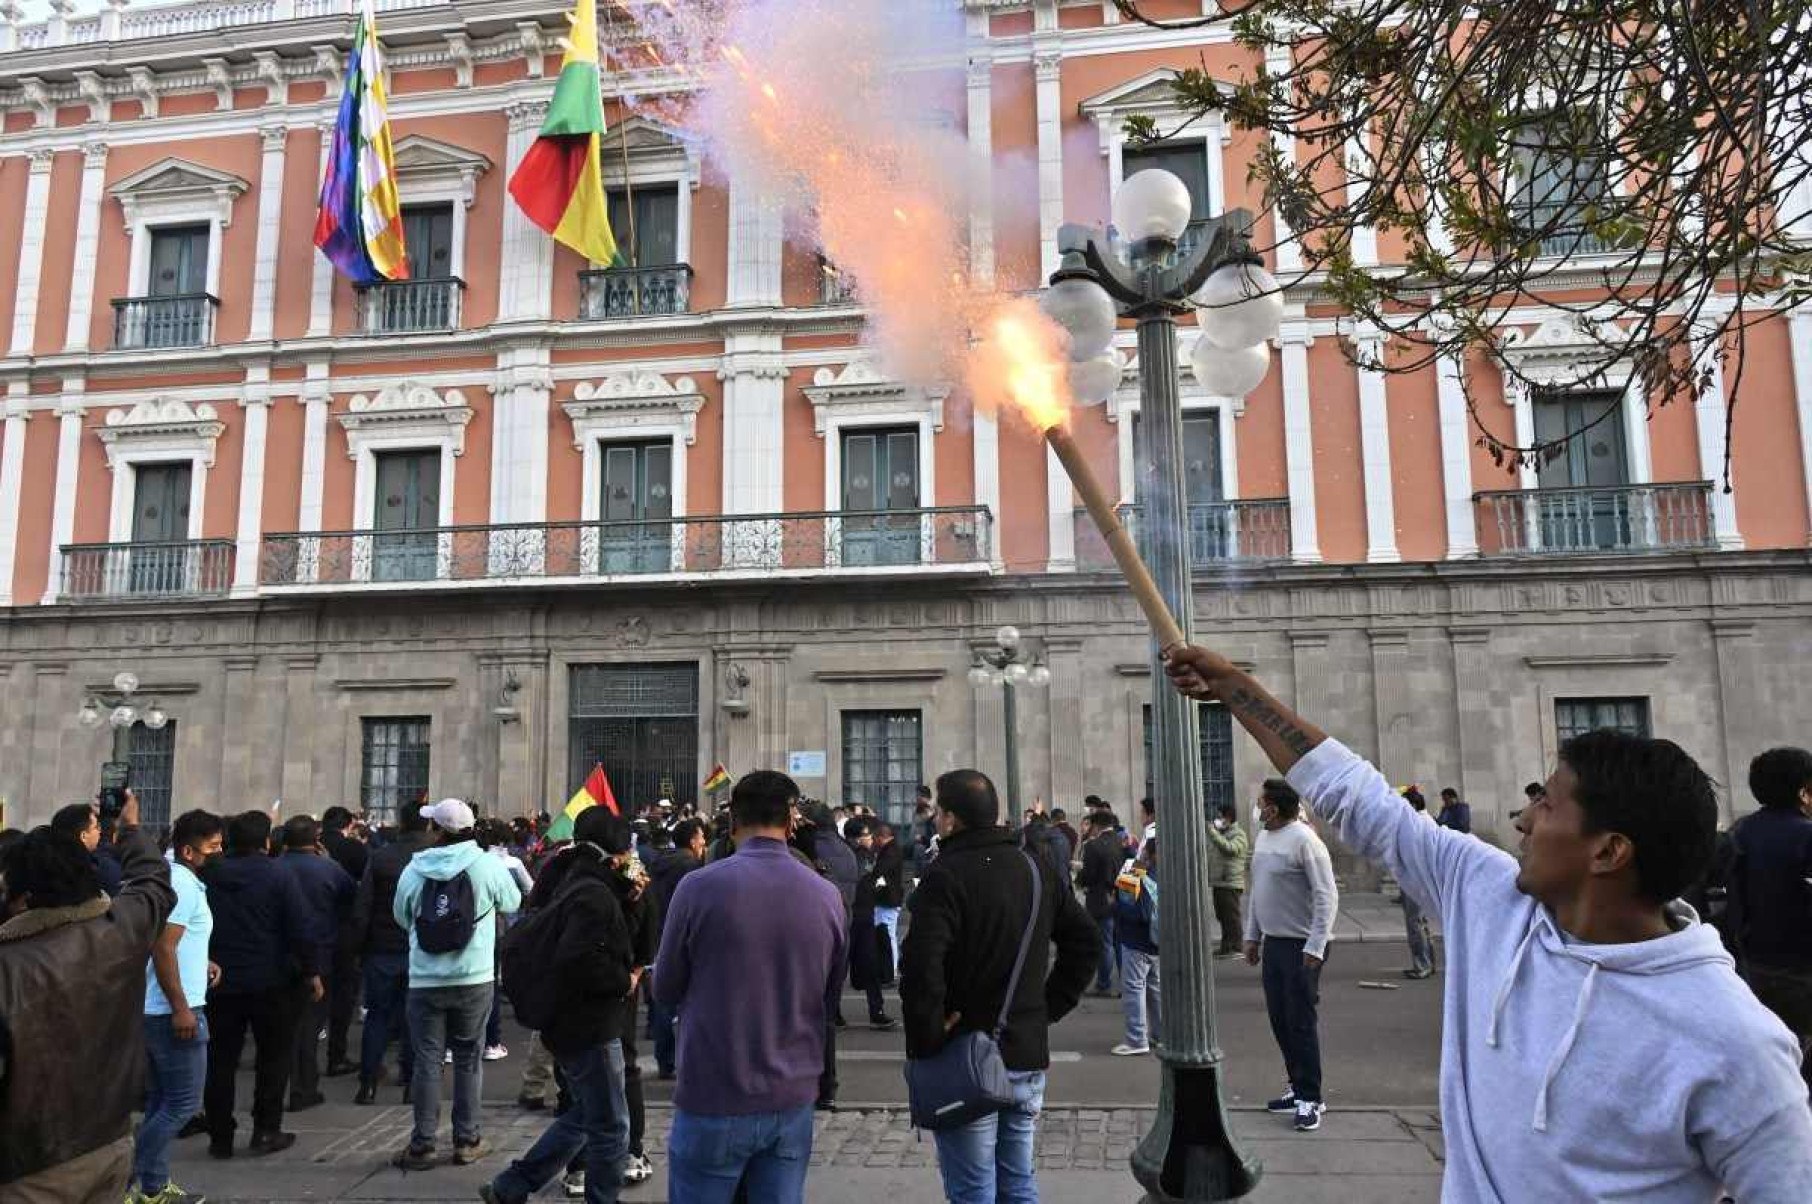 Militares recuam e deixam Praça Murillo após pressão popular na Bolívia